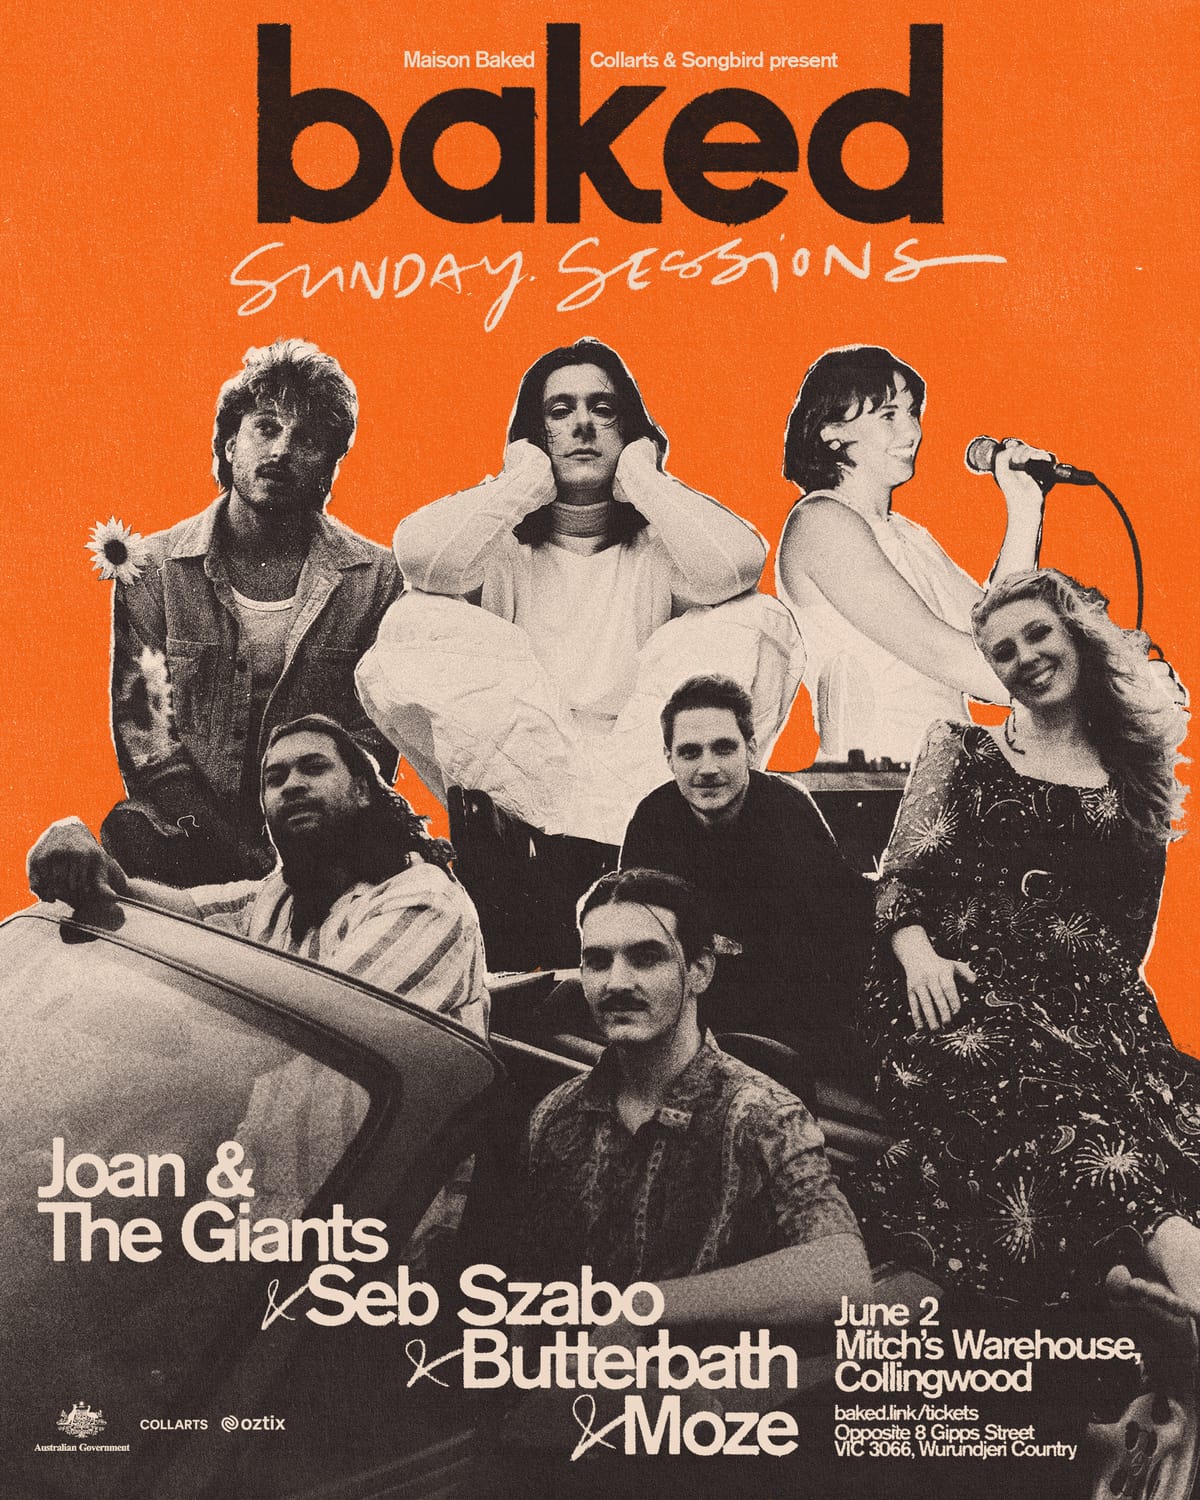 June 2 - Joan & The Giants, Seb Szabo + More